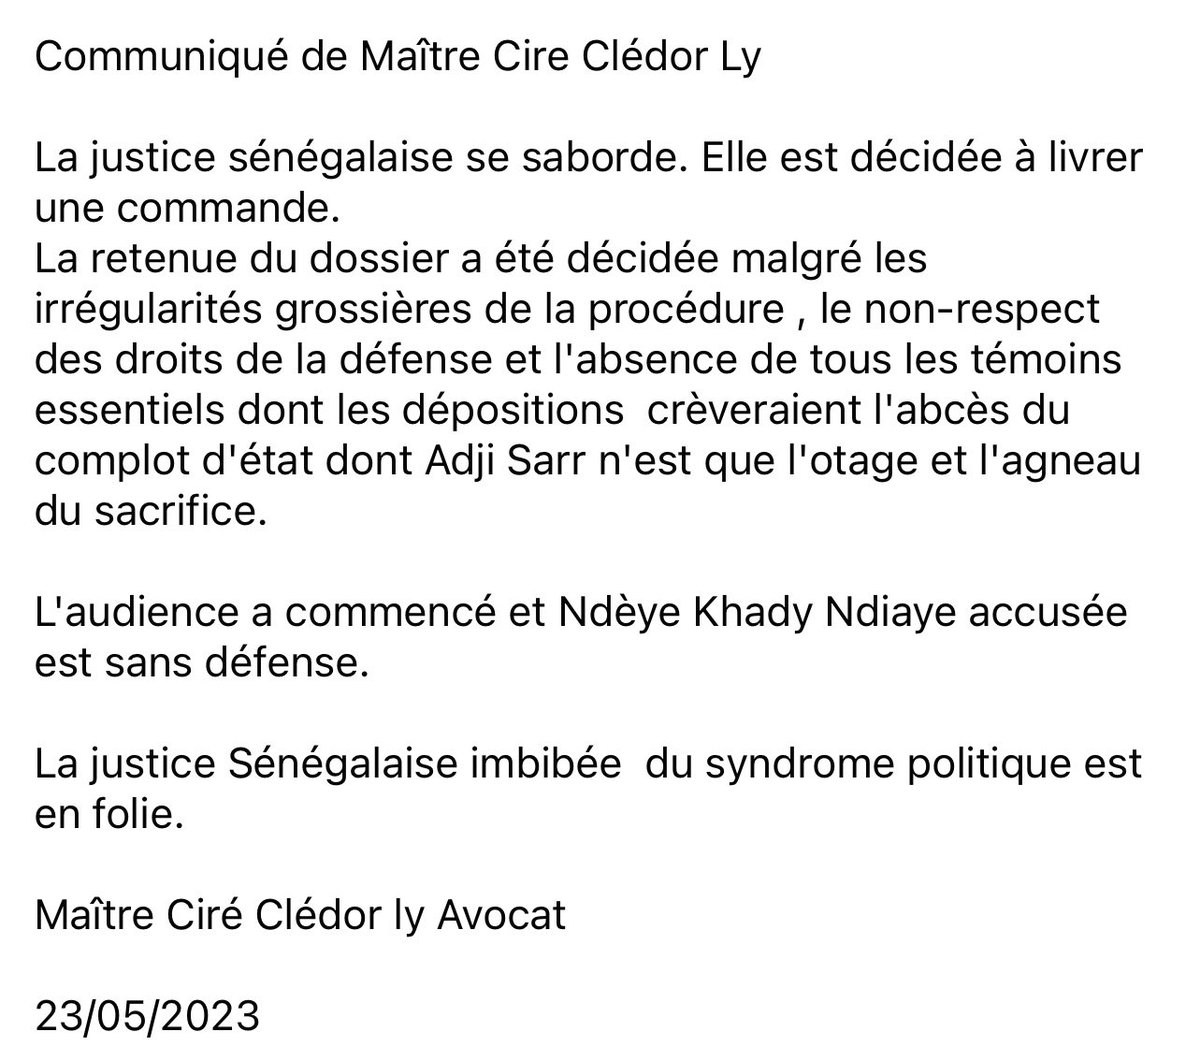 Communiqué de dénonciation de Maître Ciré Clédor ly Avocat de Ousmane Sonko
23/05/2023